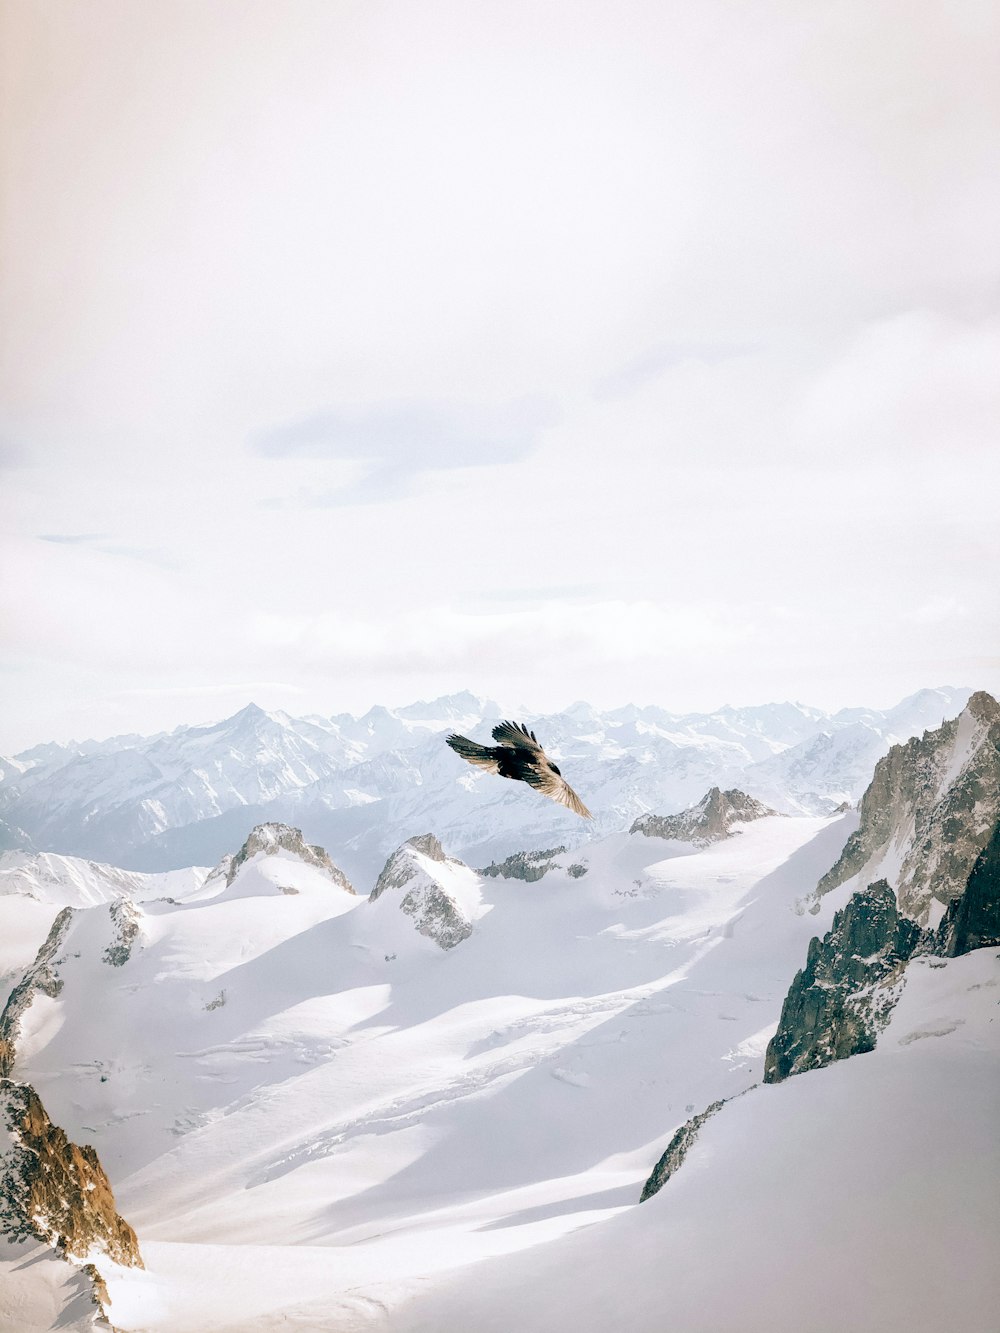 pássaro preto voando sobre a montanha coberta de neve durante o dia